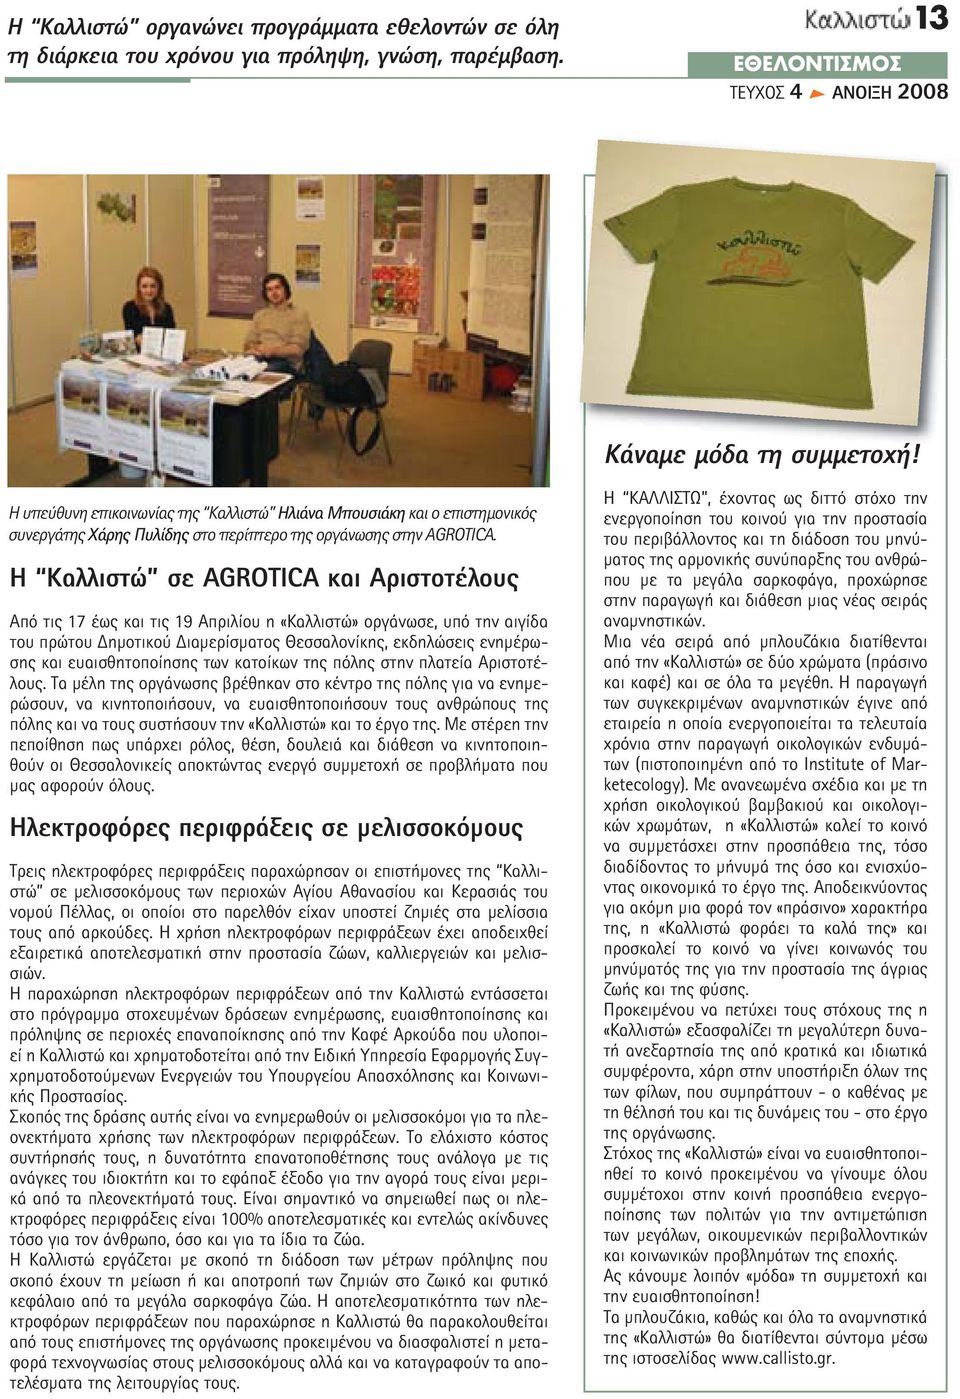 Η Καλλιστώ σε AGROTICA και Αριστοτέλους Από τις 17 έως και τις 19 Απριλίου η «Καλλιστώ» οργάνωσε, υπό την αιγίδα του πρώτου ηµοτικού ιαµερίσµατος Θεσσαλονίκης, εκδηλώσεις ενηµέρωσης και